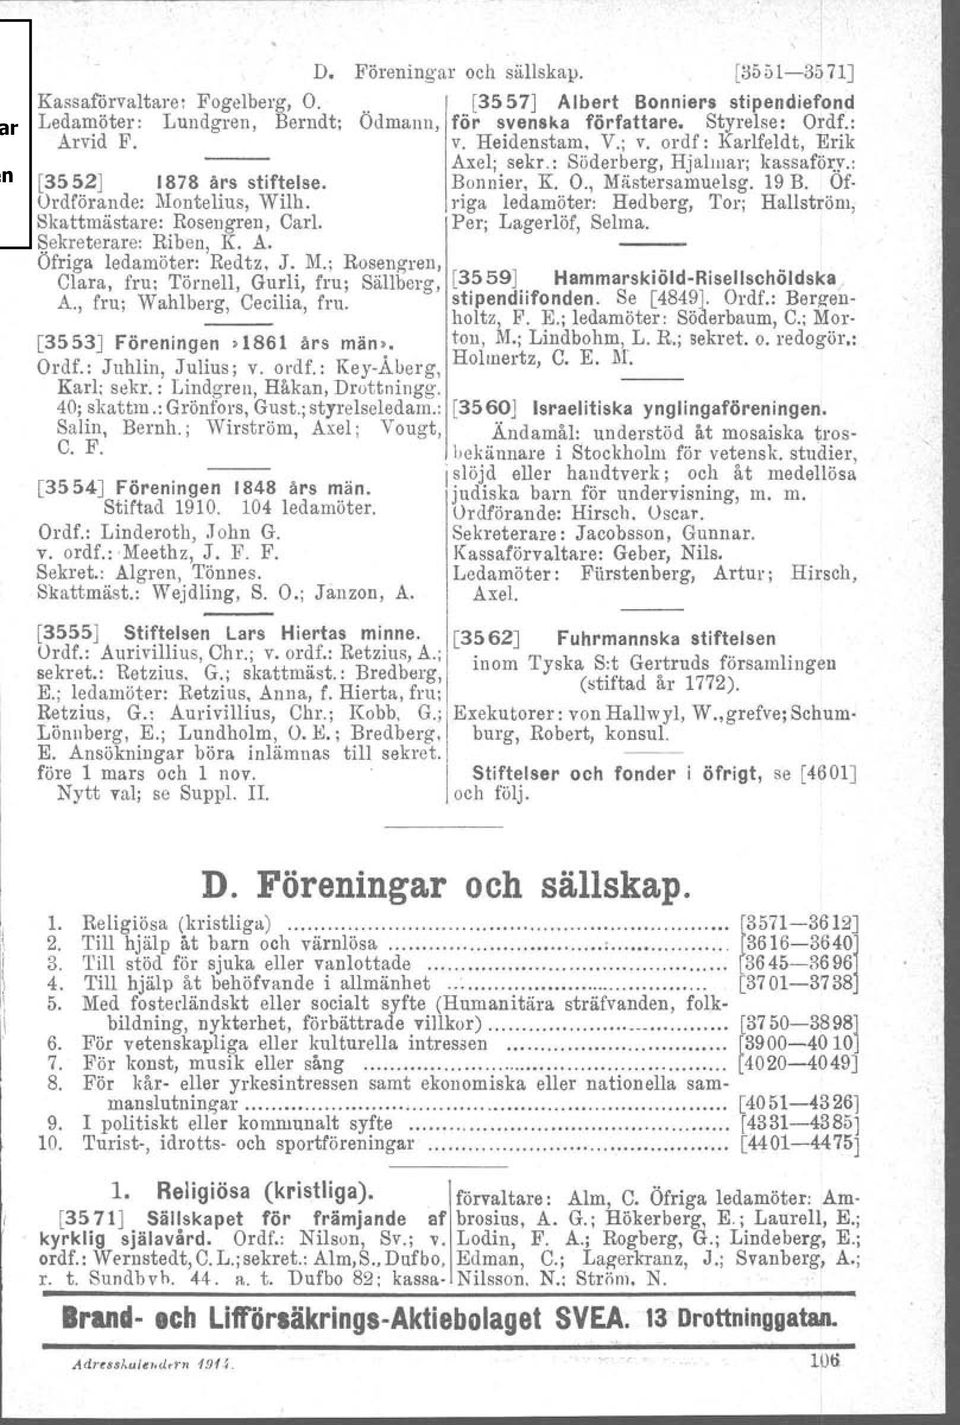 O., Mästersamuelsg. 19 B. or riga ledamöter: Hedberg, Tor; Hallström, Per; Lagerlöf, Selma. [3553J Föreningen >1861 års män>. Ordf.: Juhlin, Julius; v. ordf.: Key-Åberg, Karl; sekr.